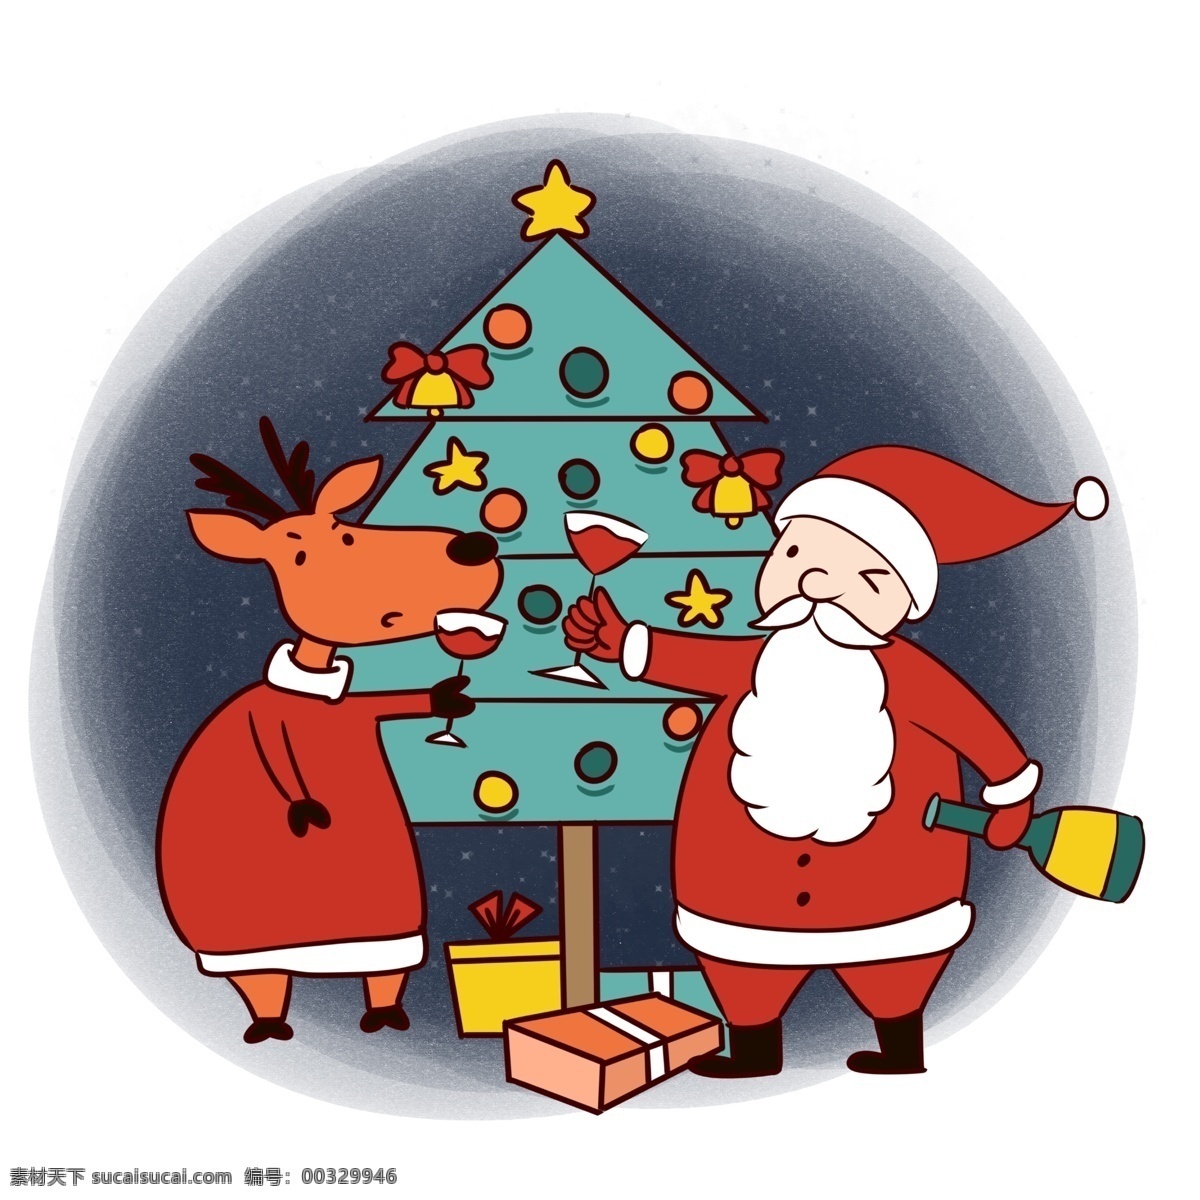 手绘 卡通 可爱 圣诞节 圣诞老人 麋鹿 矢量 免抠 圣诞快乐 礼物 圣诞树 铃铛 夜晚 圣诞夜